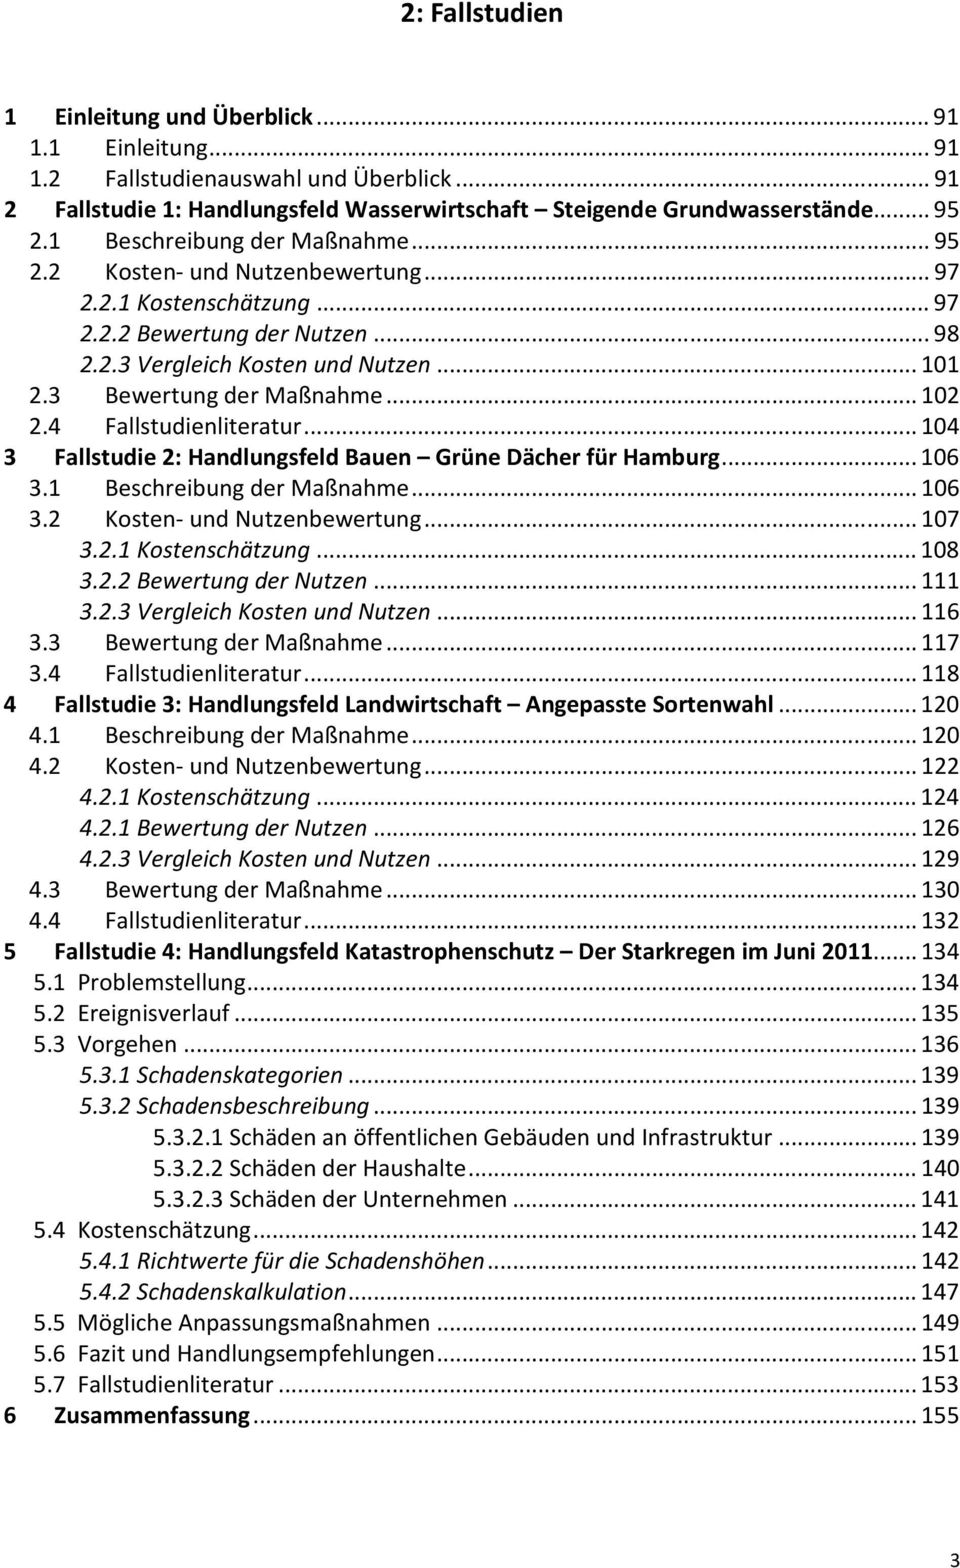 3 Bewertung der Maßnahme... 102 2.4 Fallstudienliteratur... 104 3 Fallstudie 2: Handlungsfeld Bauen Grüne Dächer für Hamburg... 106 3.1 Beschreibung der Maßnahme... 106 3.2 Kosten- und Nutzenbewertung.